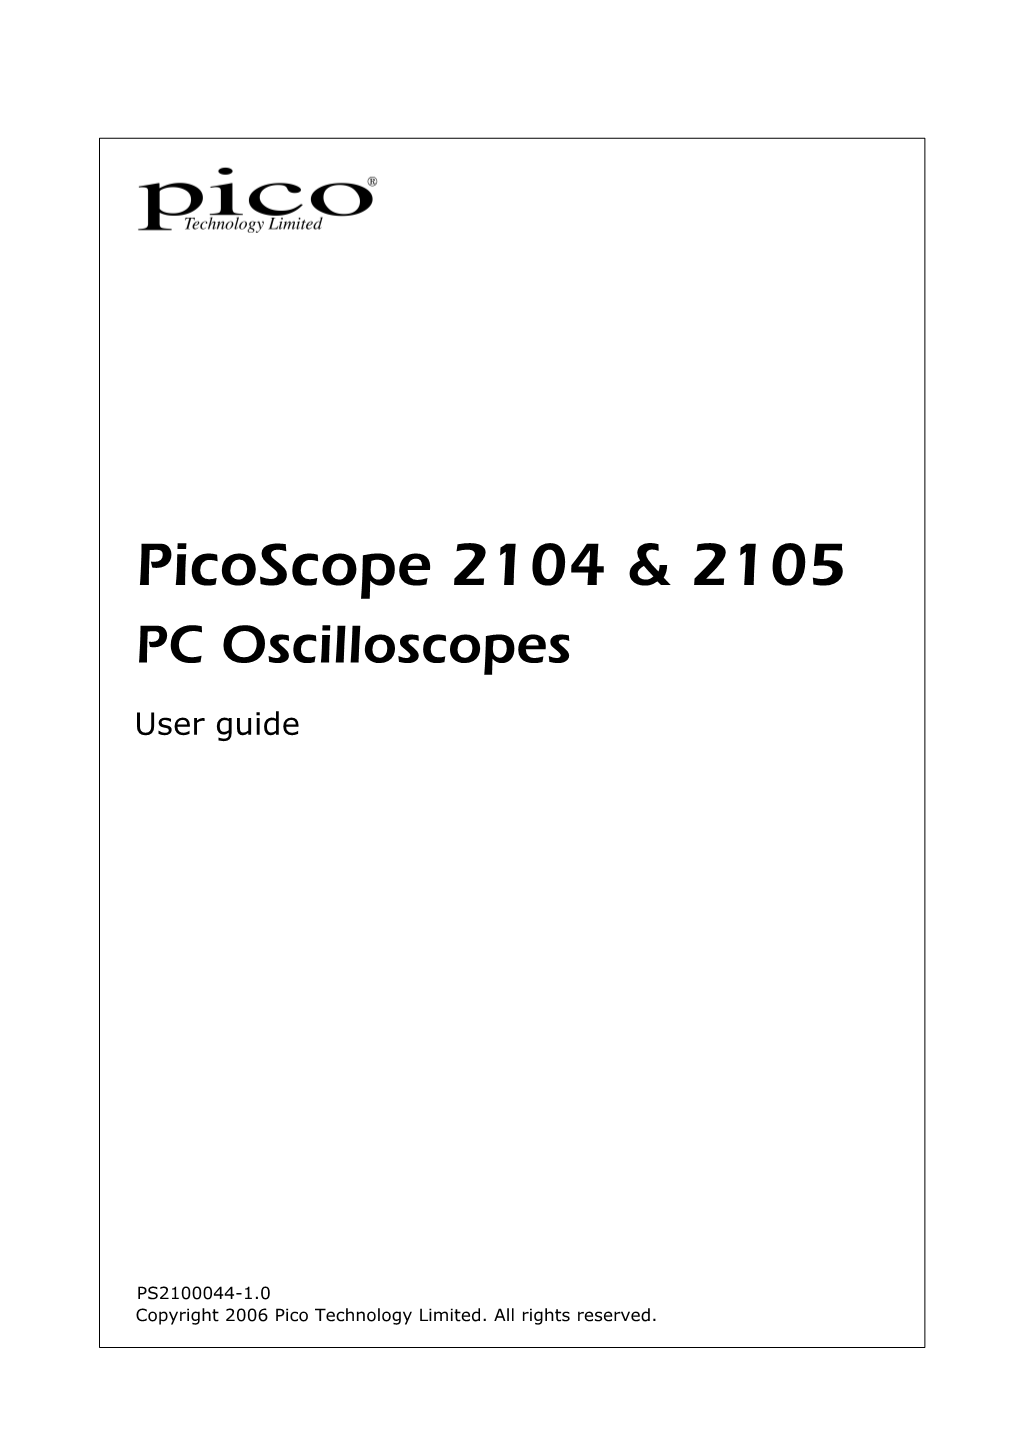 Picoscope 2104 & 2105 PC Oscilloscope User Guide